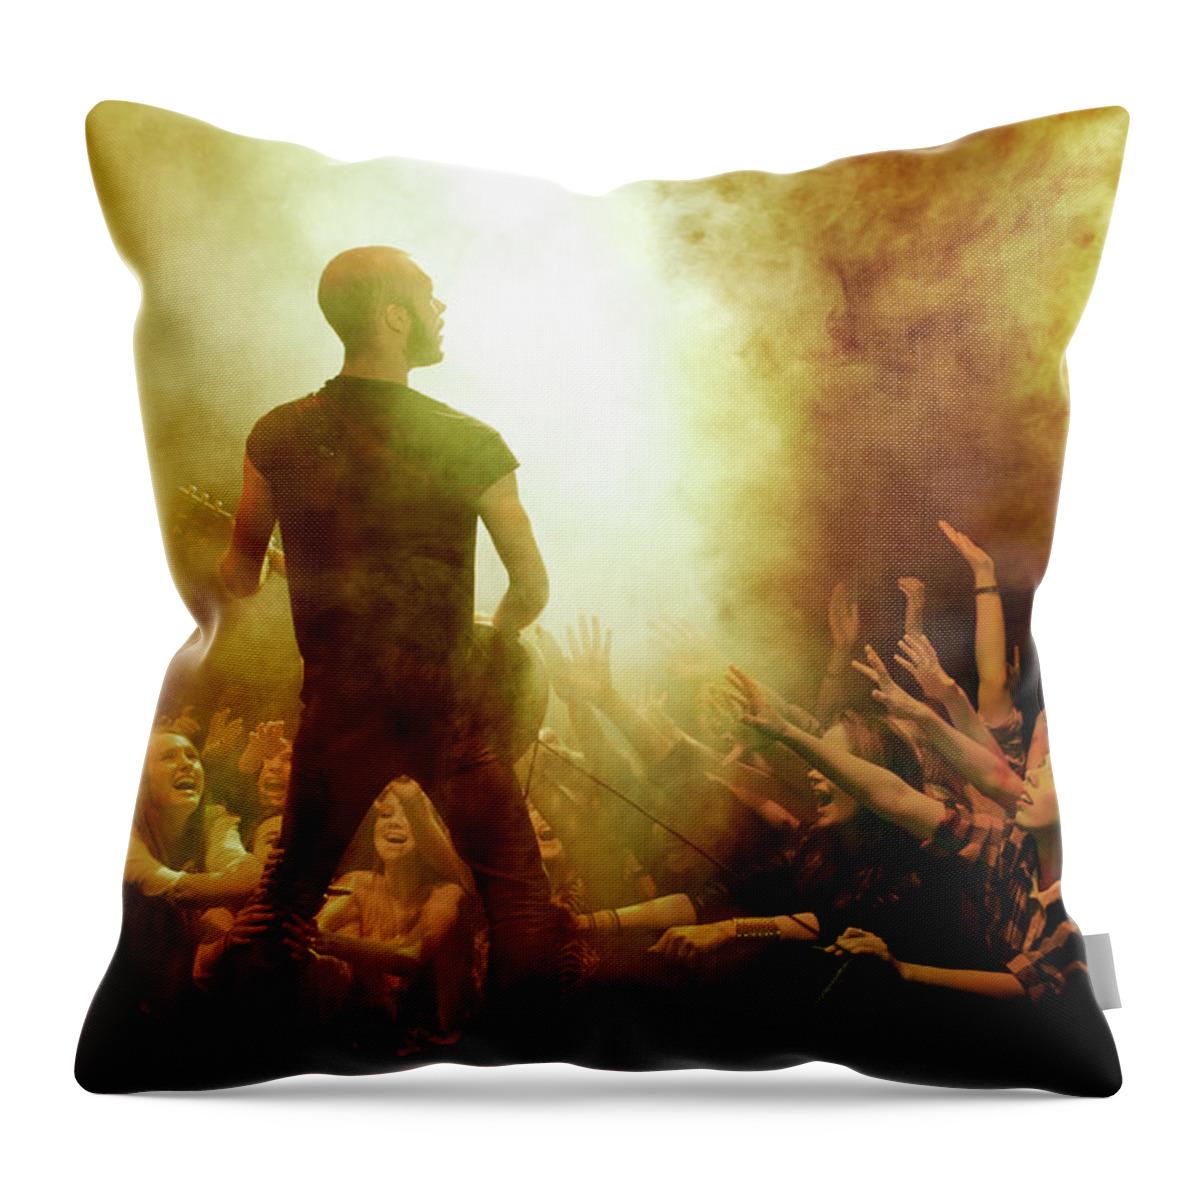 Concert Throw Pillow featuring the photograph Rock Concert #2 by Henrik Sorensen